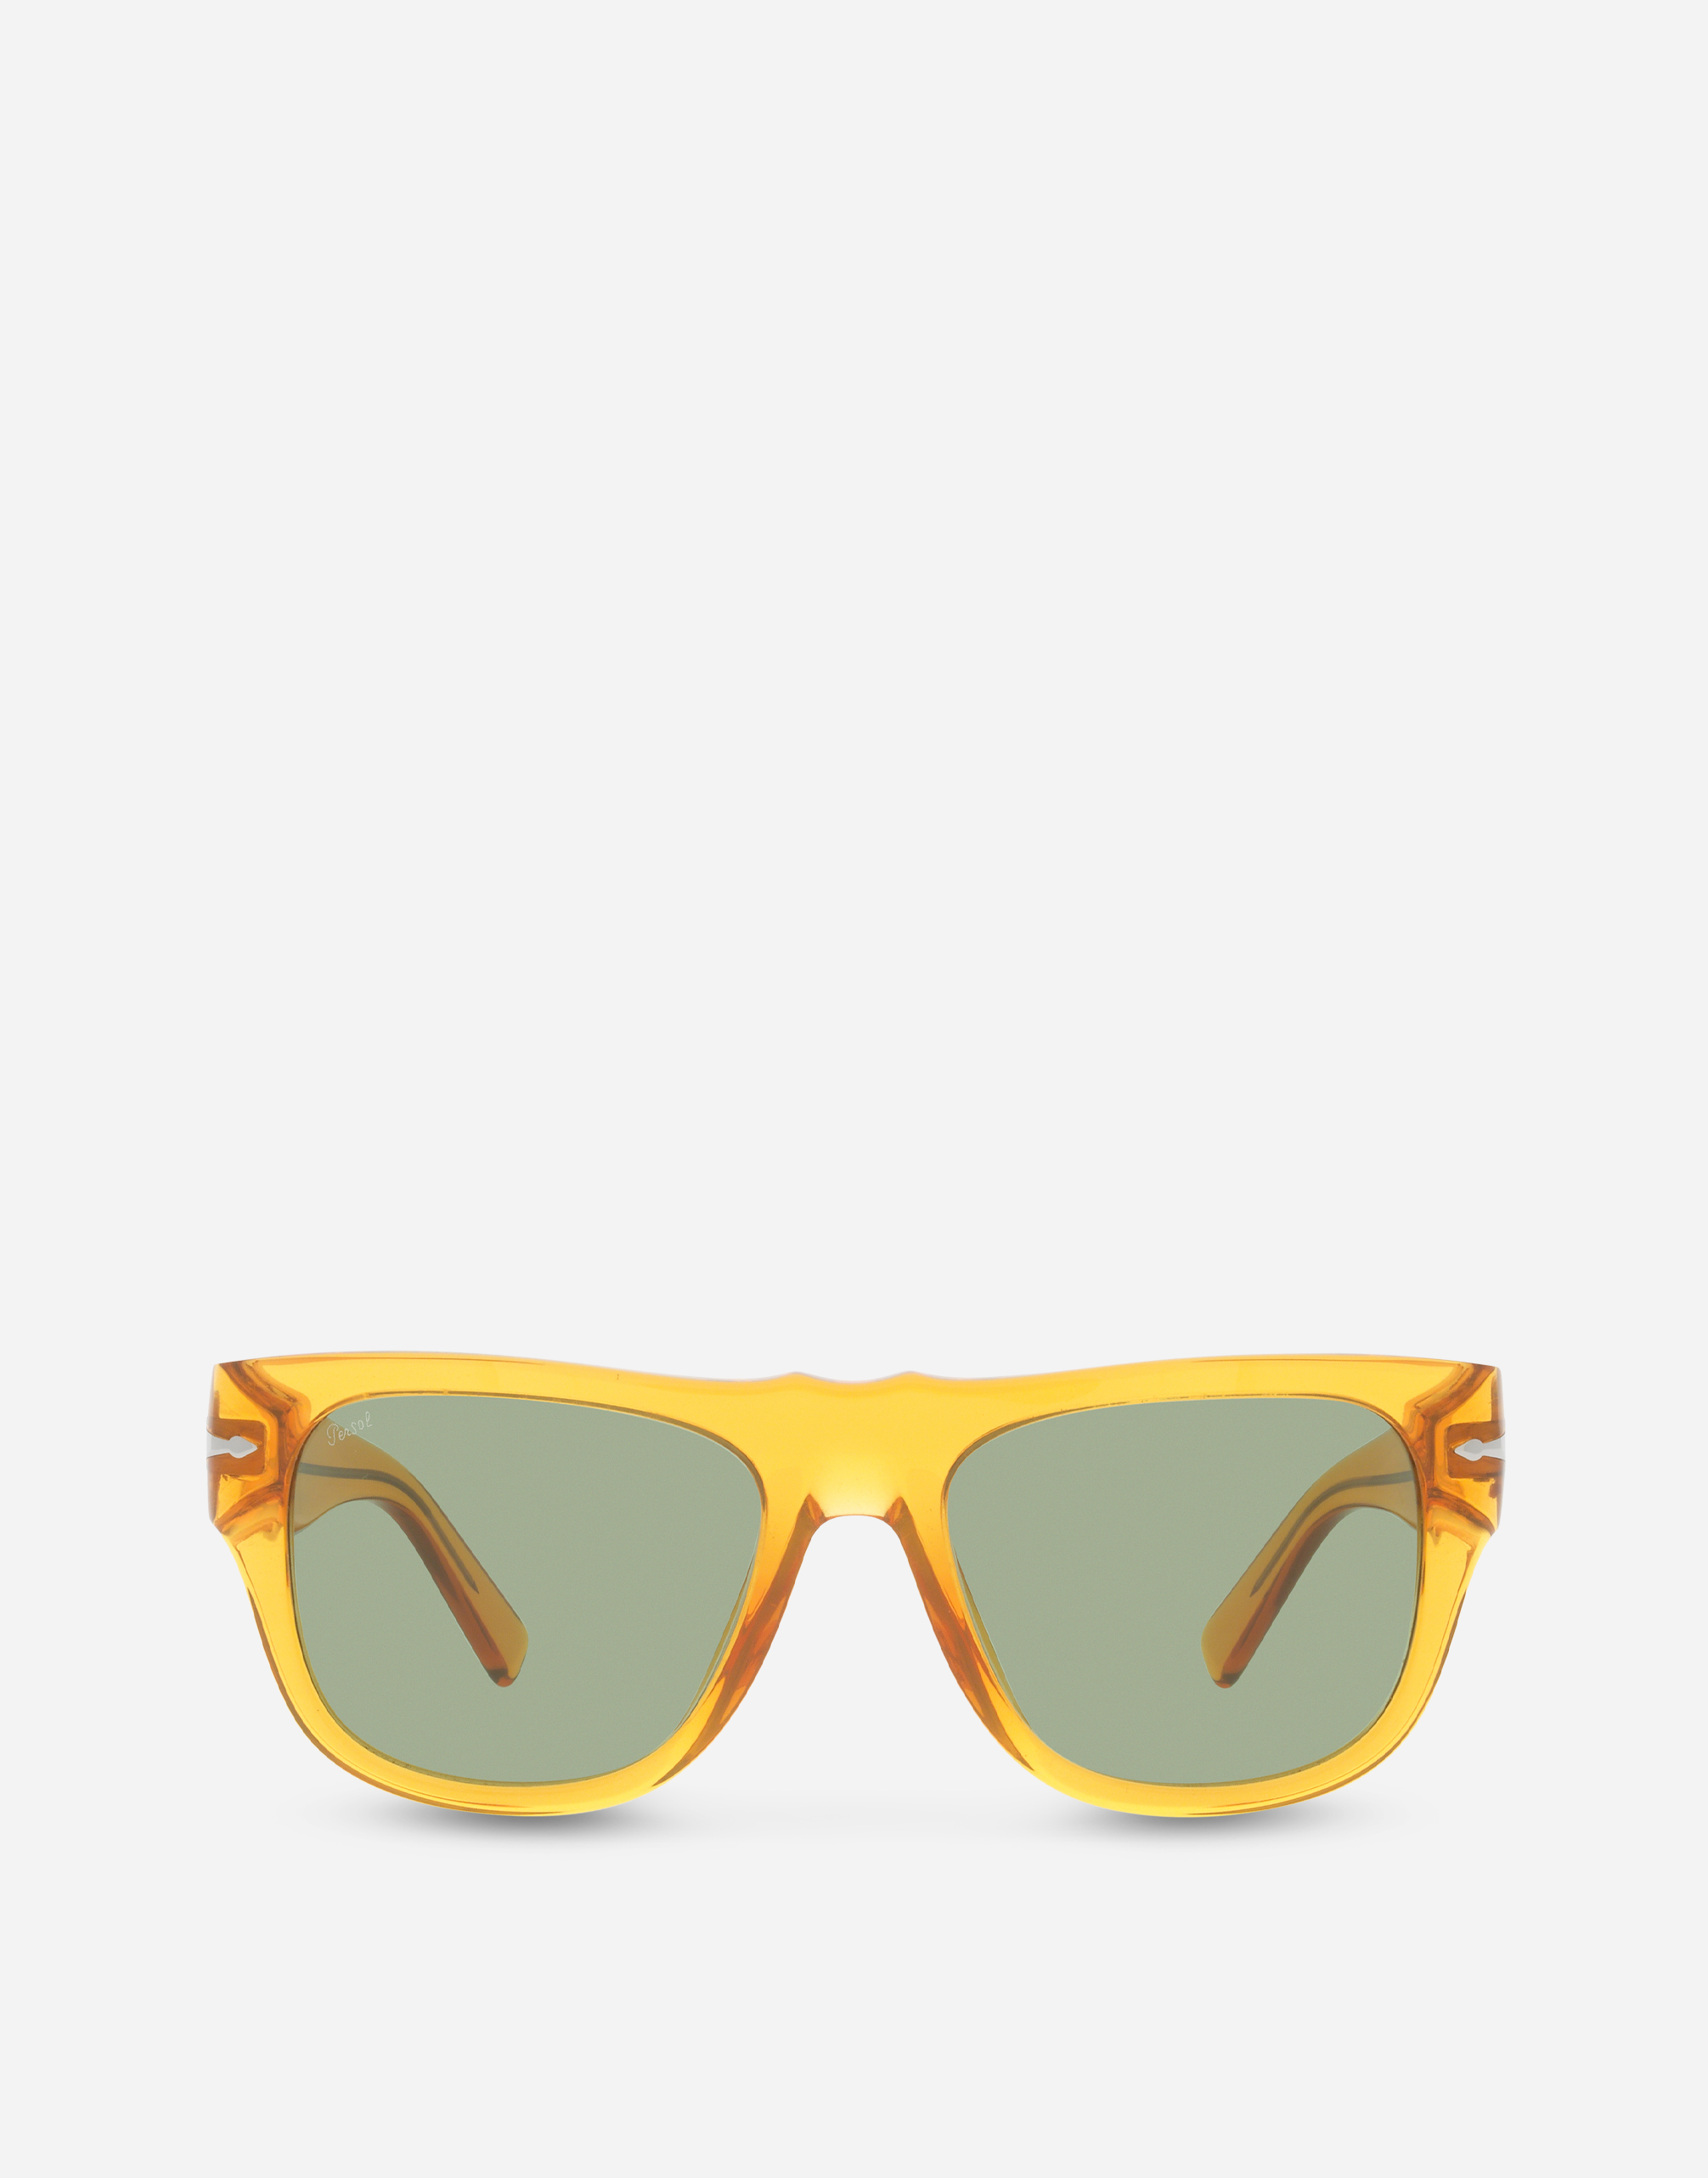 Dolce&Gabbana x Persol sunglasses in transparent orange